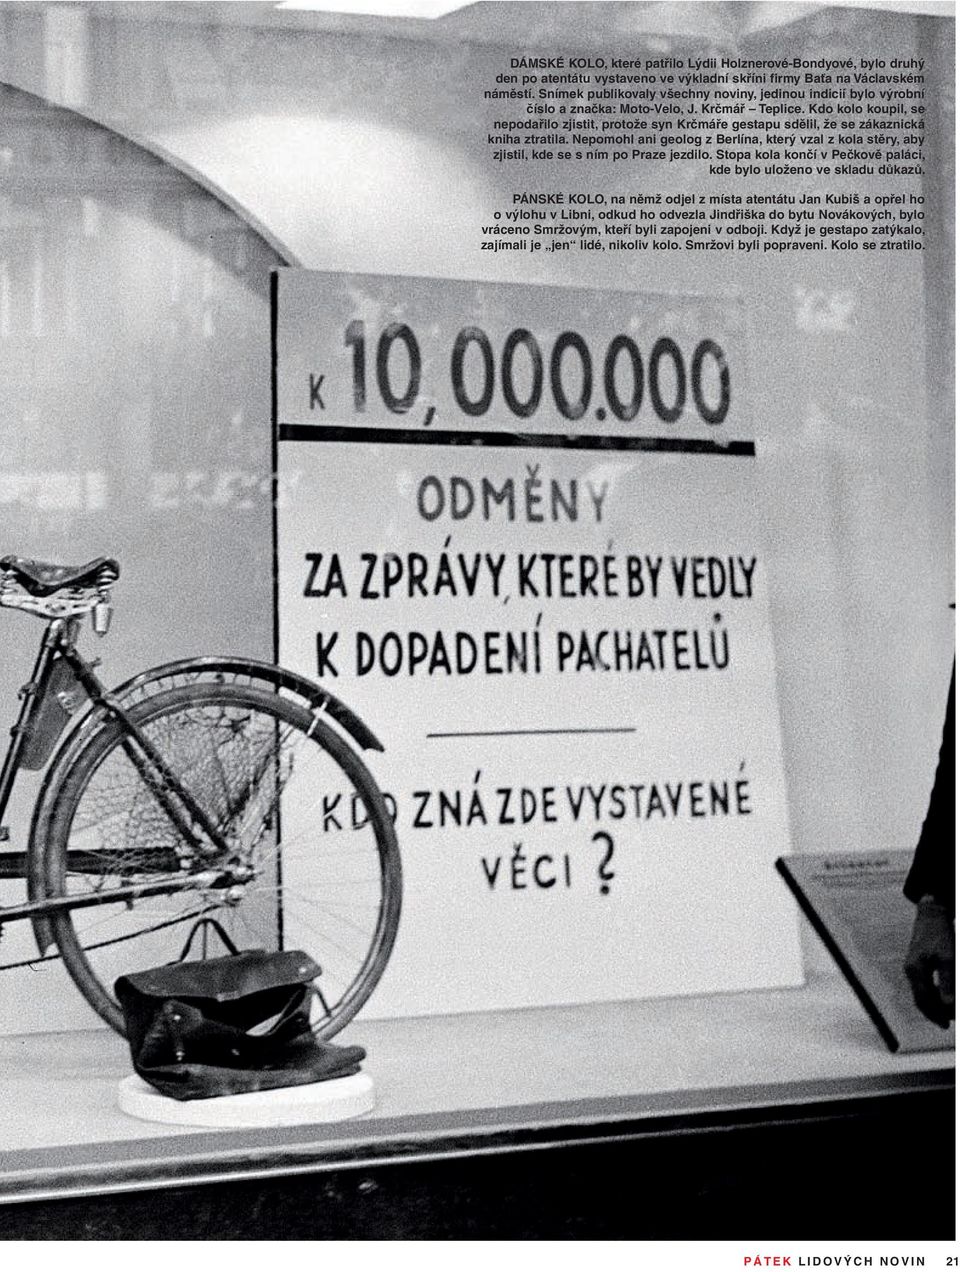 Kdo kolo koupil, se nepodařilo zjistit, protože syn Krčmáře gestapu sdělil, že se zákaznická kniha ztratila.